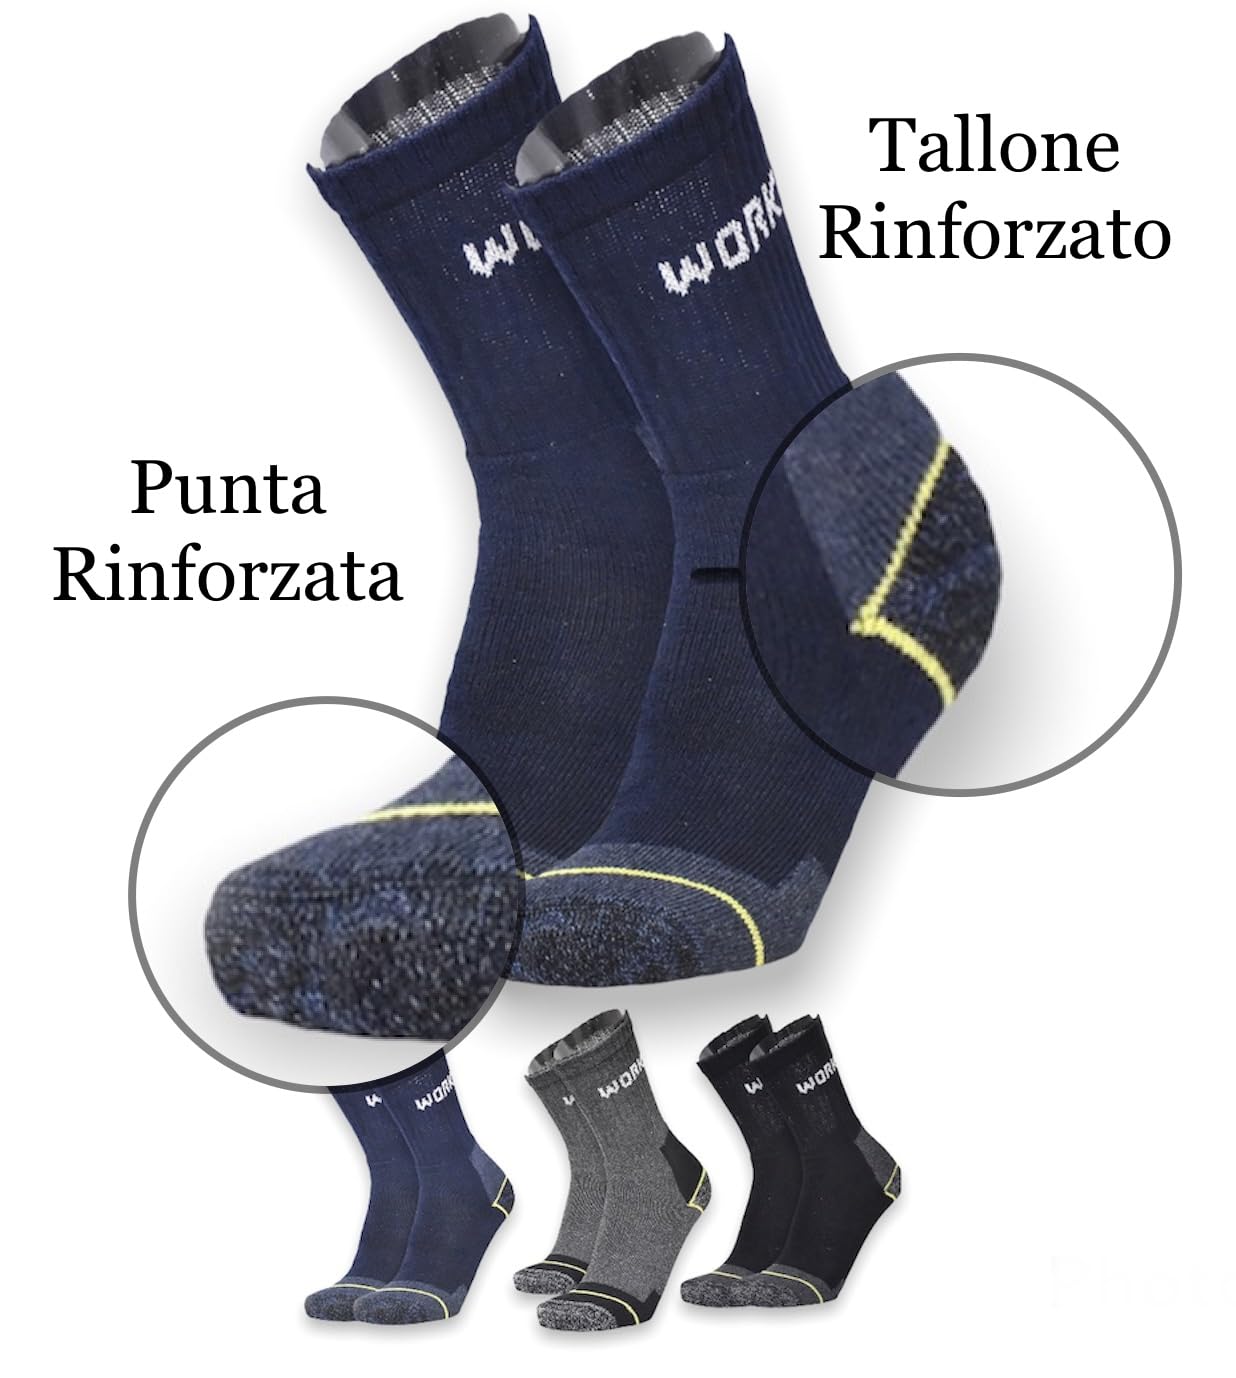 Lucchetti Socks Milano Calze da Lavoro Uomo in Spugna di Cotone Rinforzate Antinfortunistiche Nero o Assortito (43-46, 18 Paia Nero)